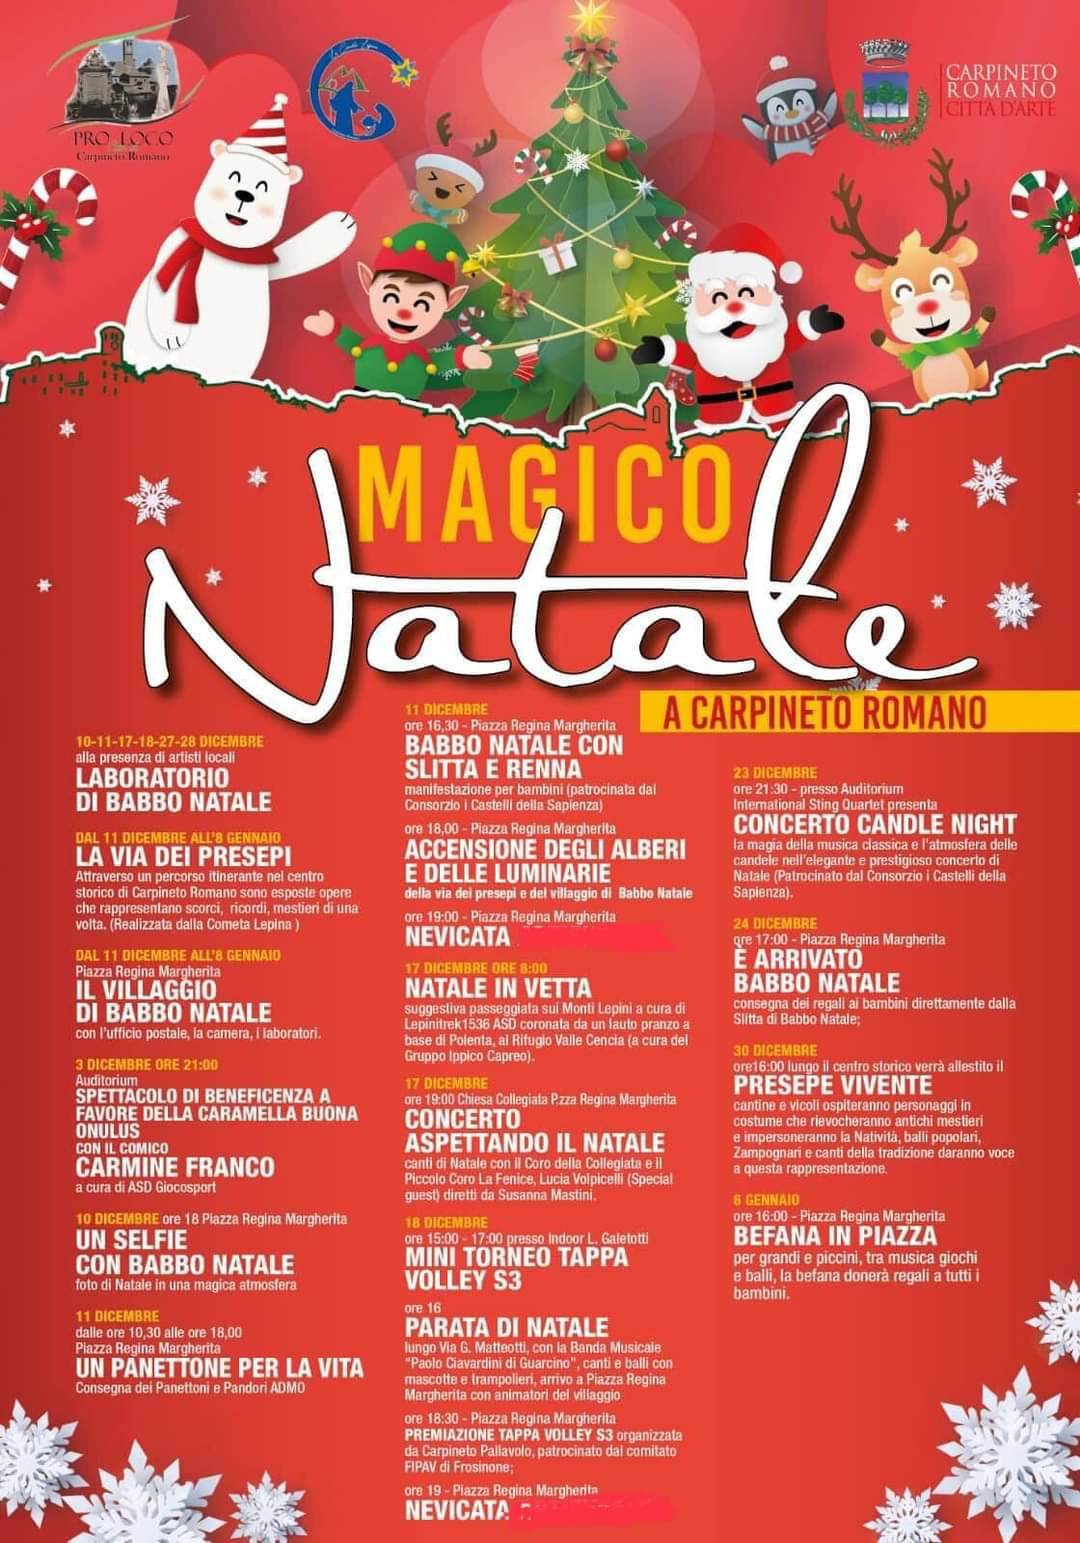 Carpineto Romano: Magico Natale 2022 @ Carpineto Romano